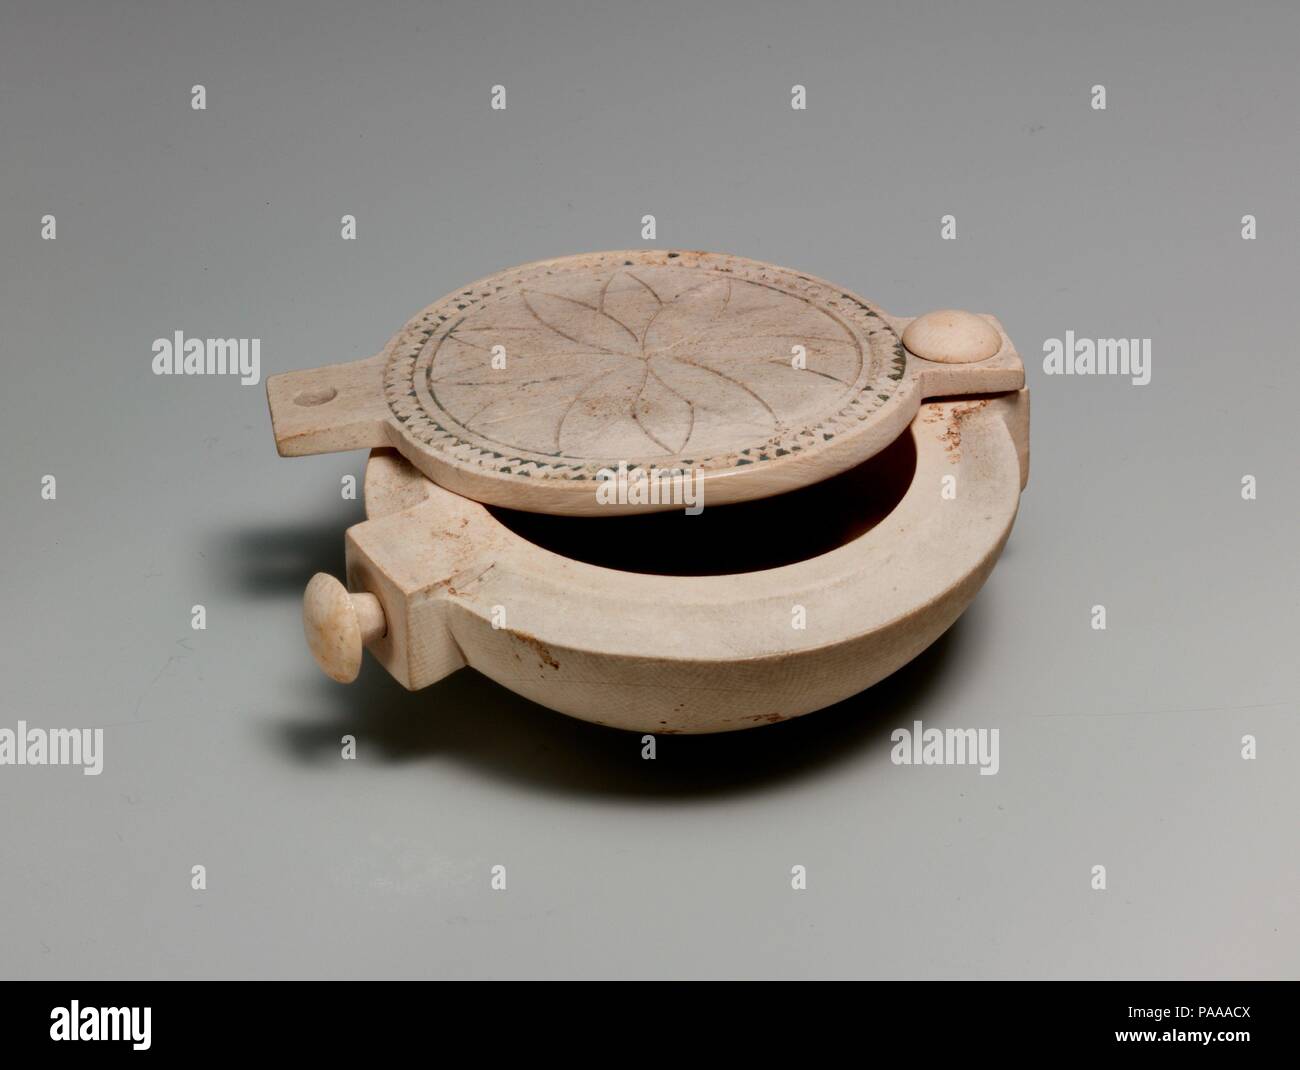 Kosmetik Box mit einem drehbaren Oberteil. Abmessungen: L 9,2 cm (3 5/8 in.); W. 7,7 cm (3 1/16 in.); H. 2.5cm (1 5/16 in.). Dynastie: Dynasty 18, früh. Datum: Ca. 1550-1458 v. Chr.. Dieses kleine Elfenbein Box hat einen Deckel, der an einem Ende gekoppelt ist, so dass es offen zu schwenken und geschlossen. Das Loch am anderen Ende der Deckel hielt einmal einen anderen Peg. Wenn geschlossen, die Peg in den Deckel, und stellen Sie den PEG ragen aus der Box könnte zusammen mit String die Box aus der Öffnung zu halten gebunden werden. Die Oberseite der Box hat mit eingeschnittenen Linien, eine Rosette, umrahmt von einem zig-zag Muster Formular eingerichtet. Die Rosette wurde wahrscheinlich benötigten Stockfoto